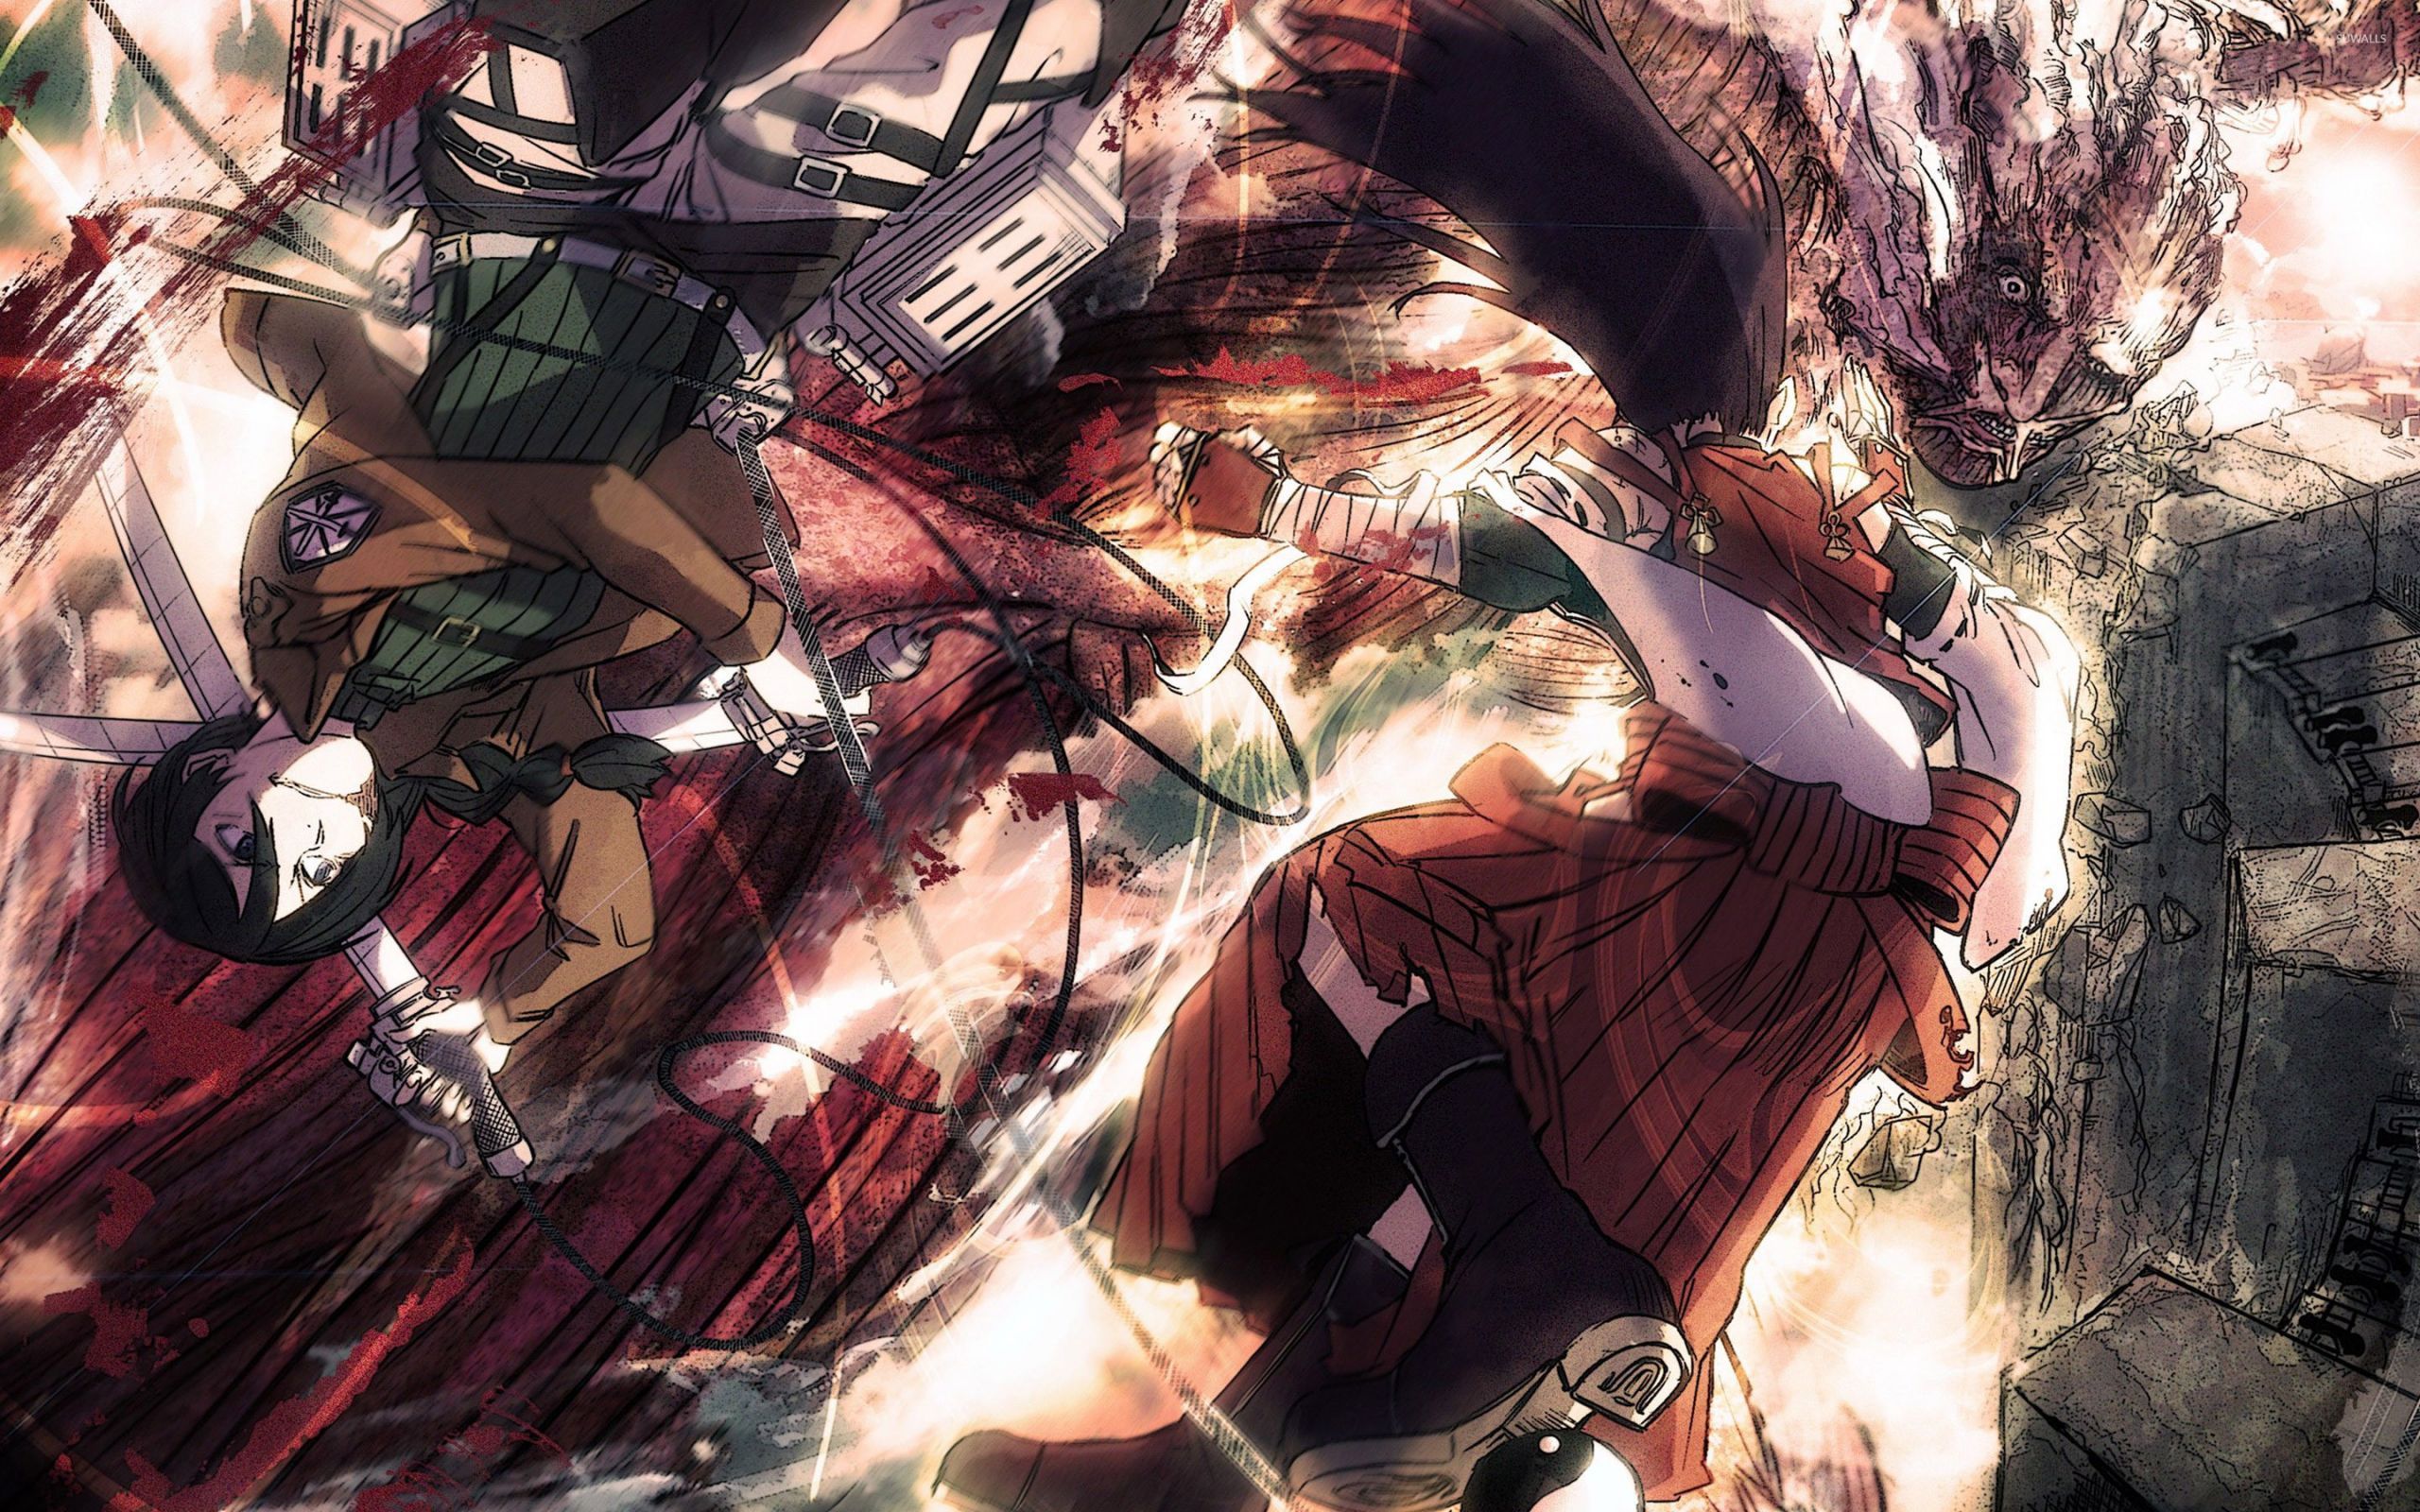 Anime #Attack #background #desktop #Lovely #Titan #wallpaper Attack On Titan Wallpaper 4k Desktop Lovely Attack Titan 7. Anime wallpaper, Anime background, Anime